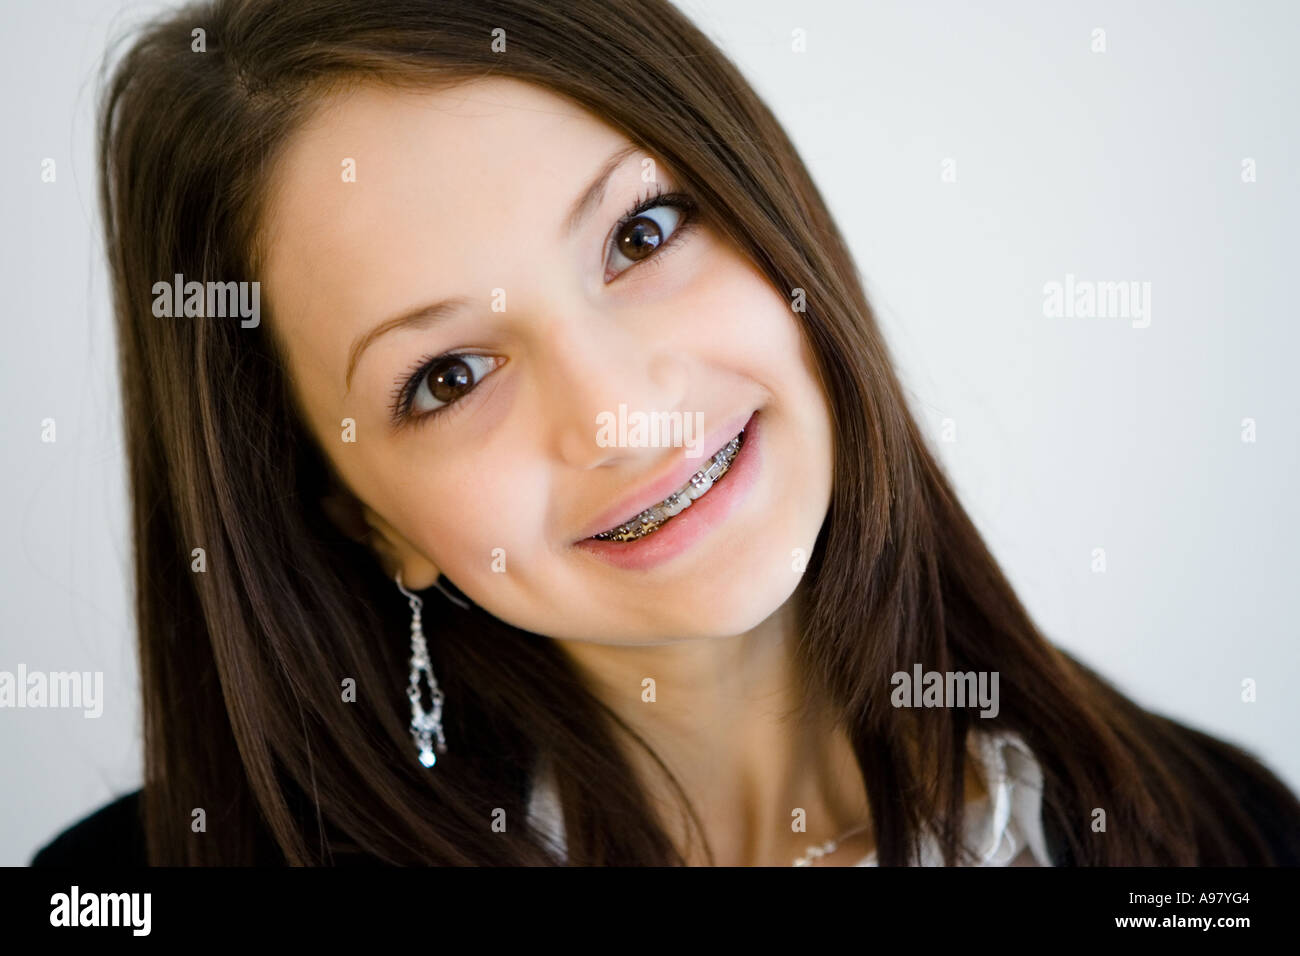 Gesicht eines hübschen Mädchens mit Grübchen und Hosenträger lächelnd Stockfoto